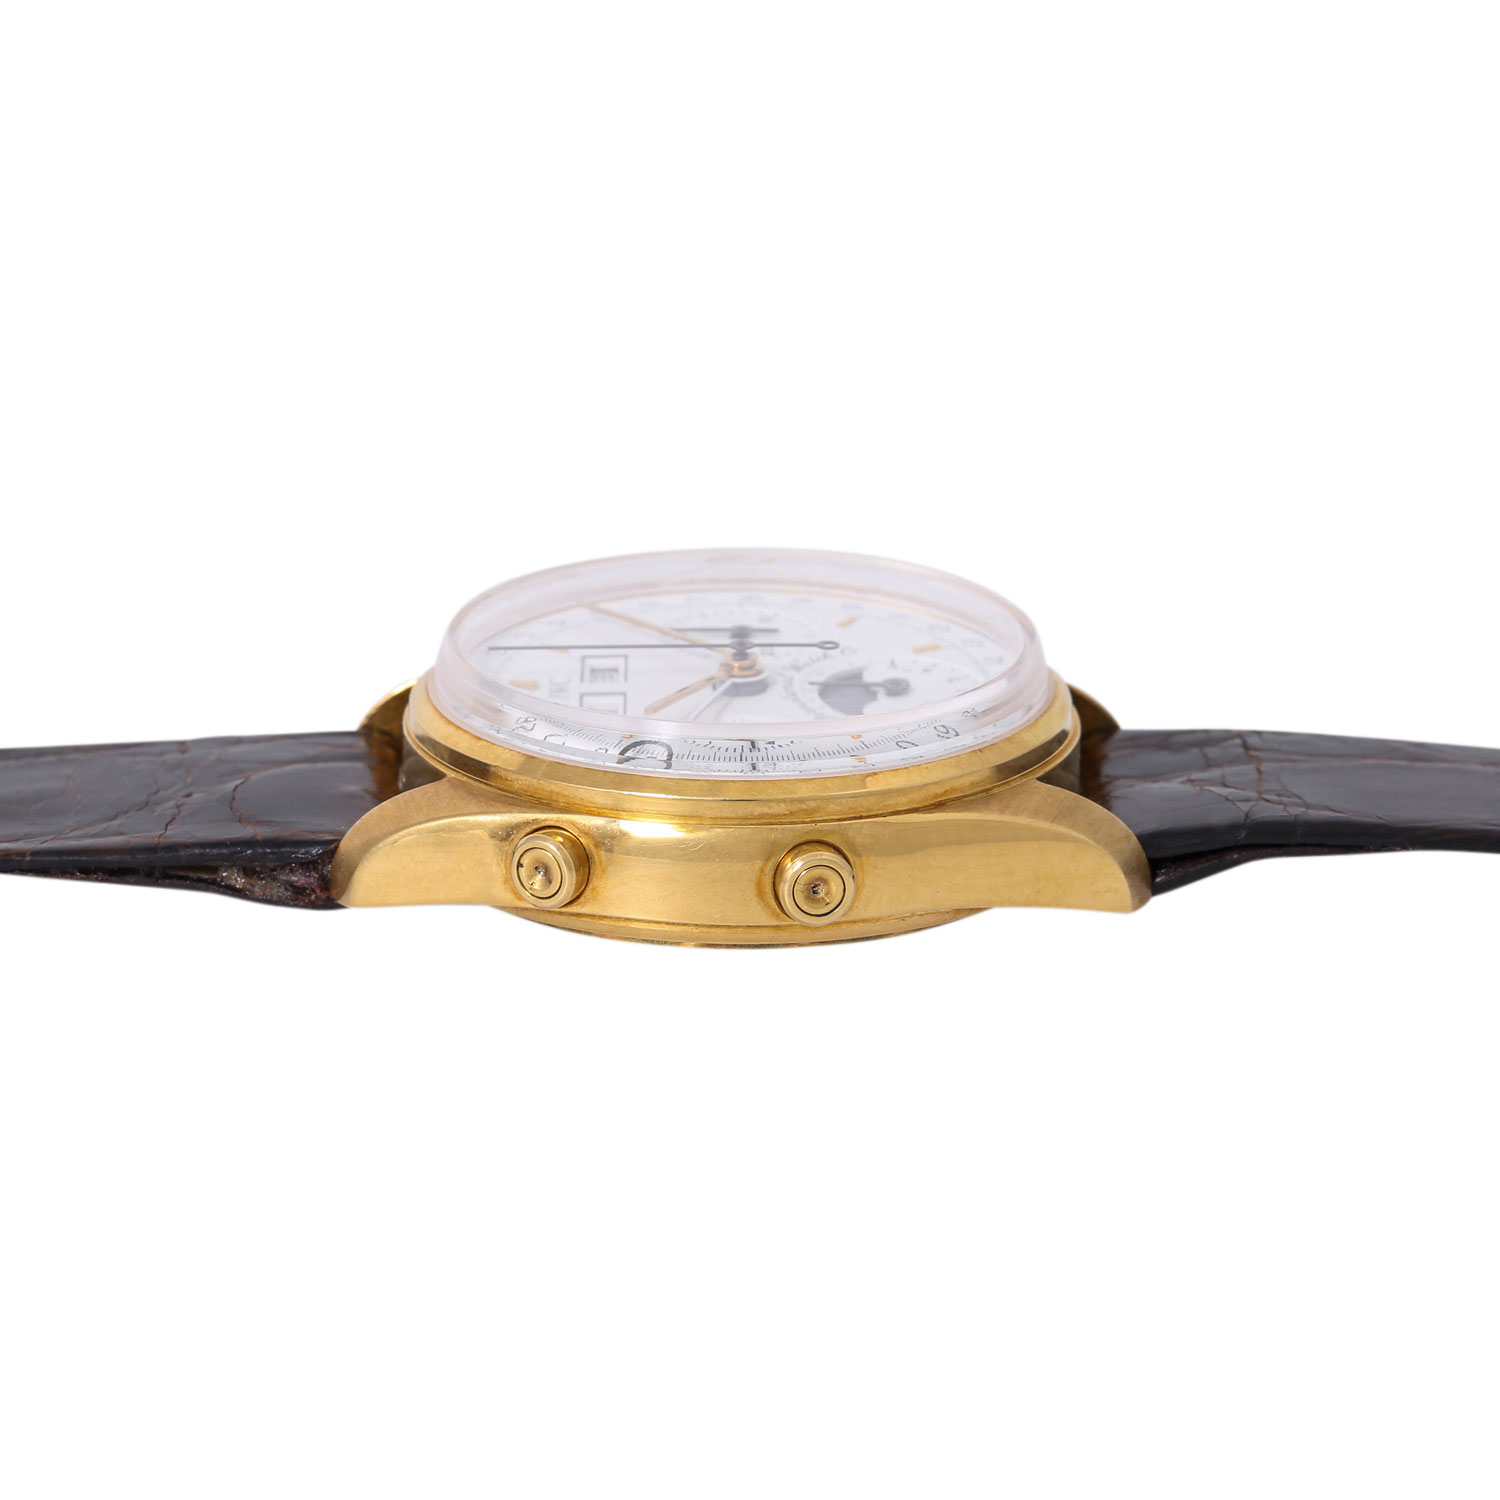 IWC sehr seltener Vollkalender Chronograph Vintage Herren Armbanduhr, Ref. 3710. NOS. Limitiert 150 - Image 4 of 8